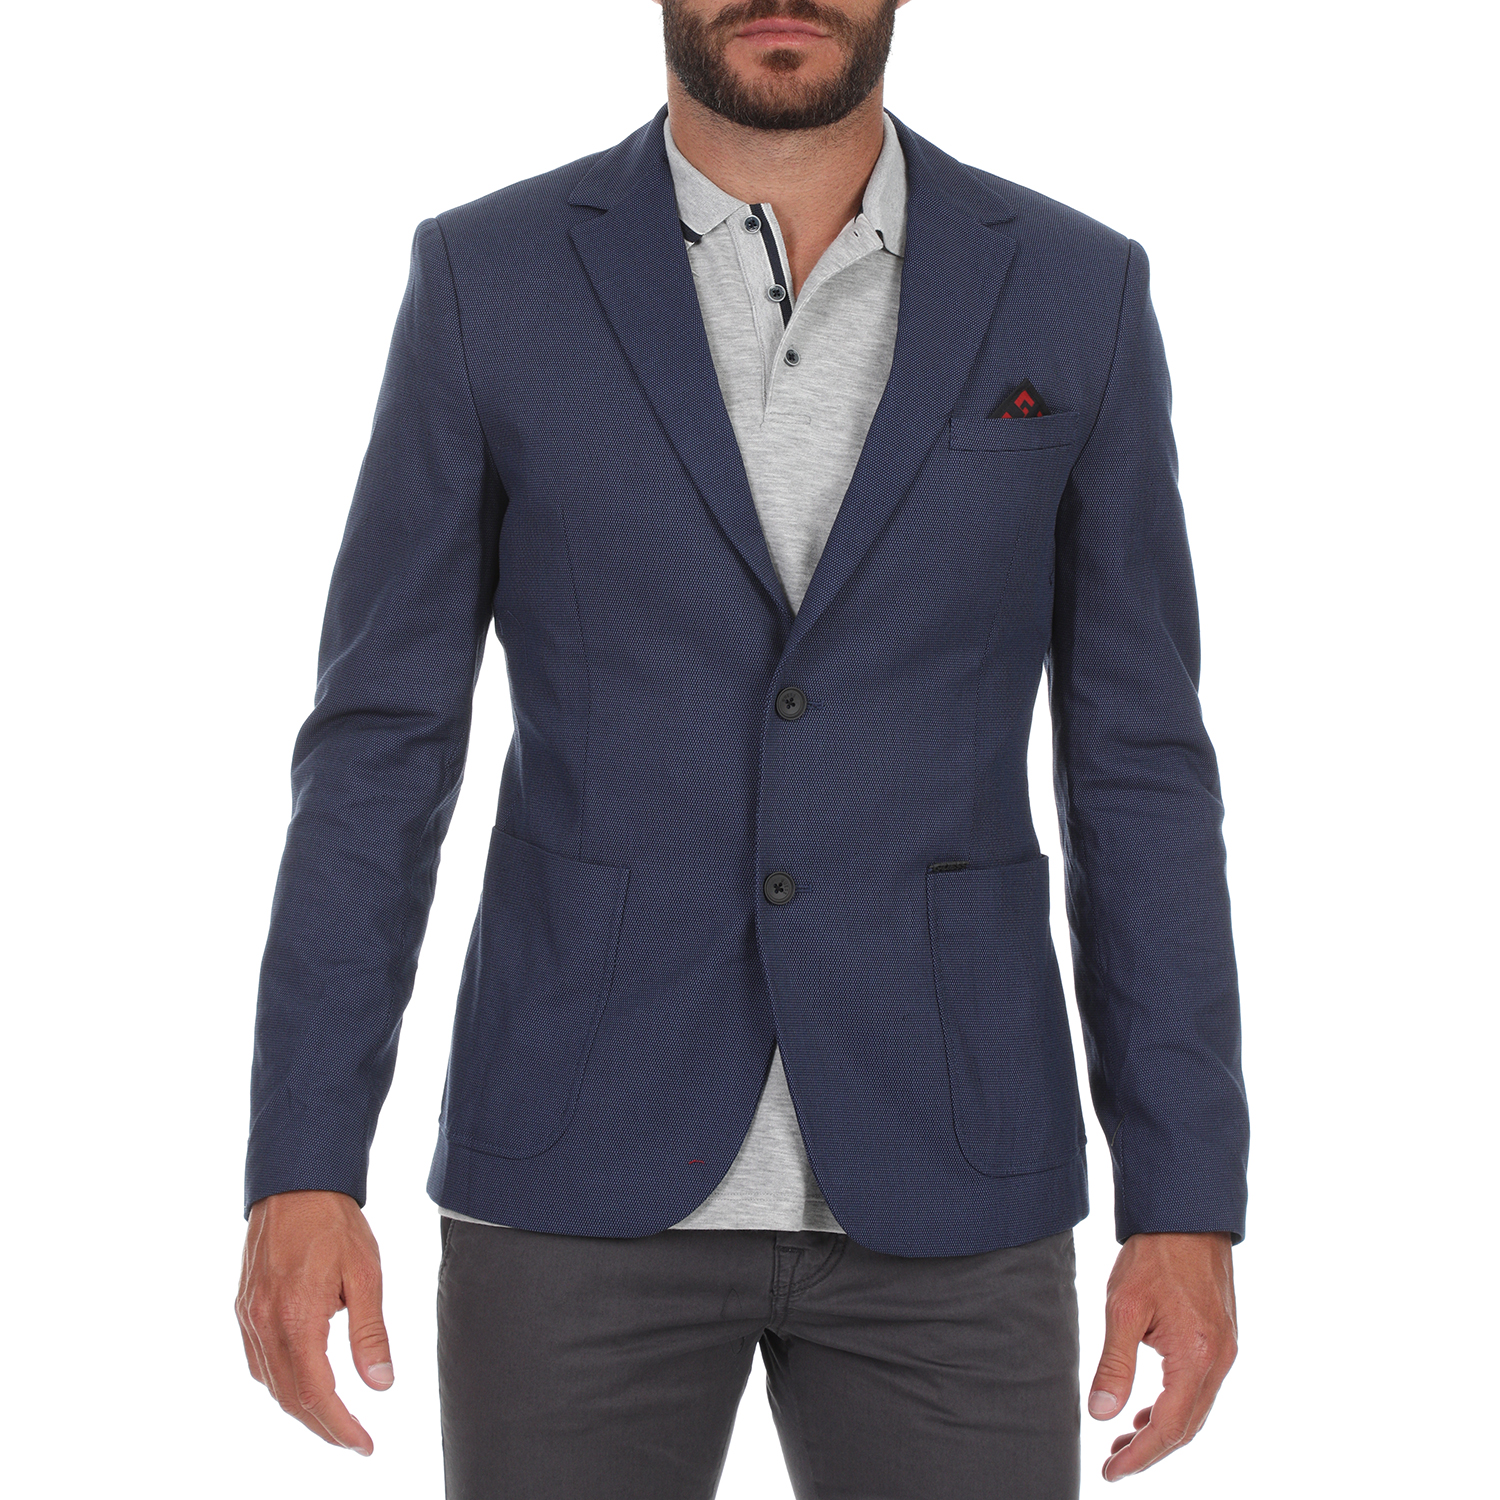 Ανδρικά/Ρούχα/Πανωφόρια/Σακάκια GUESS - Ανδρικό σακάκι blazer GUESS FANCY μπλε